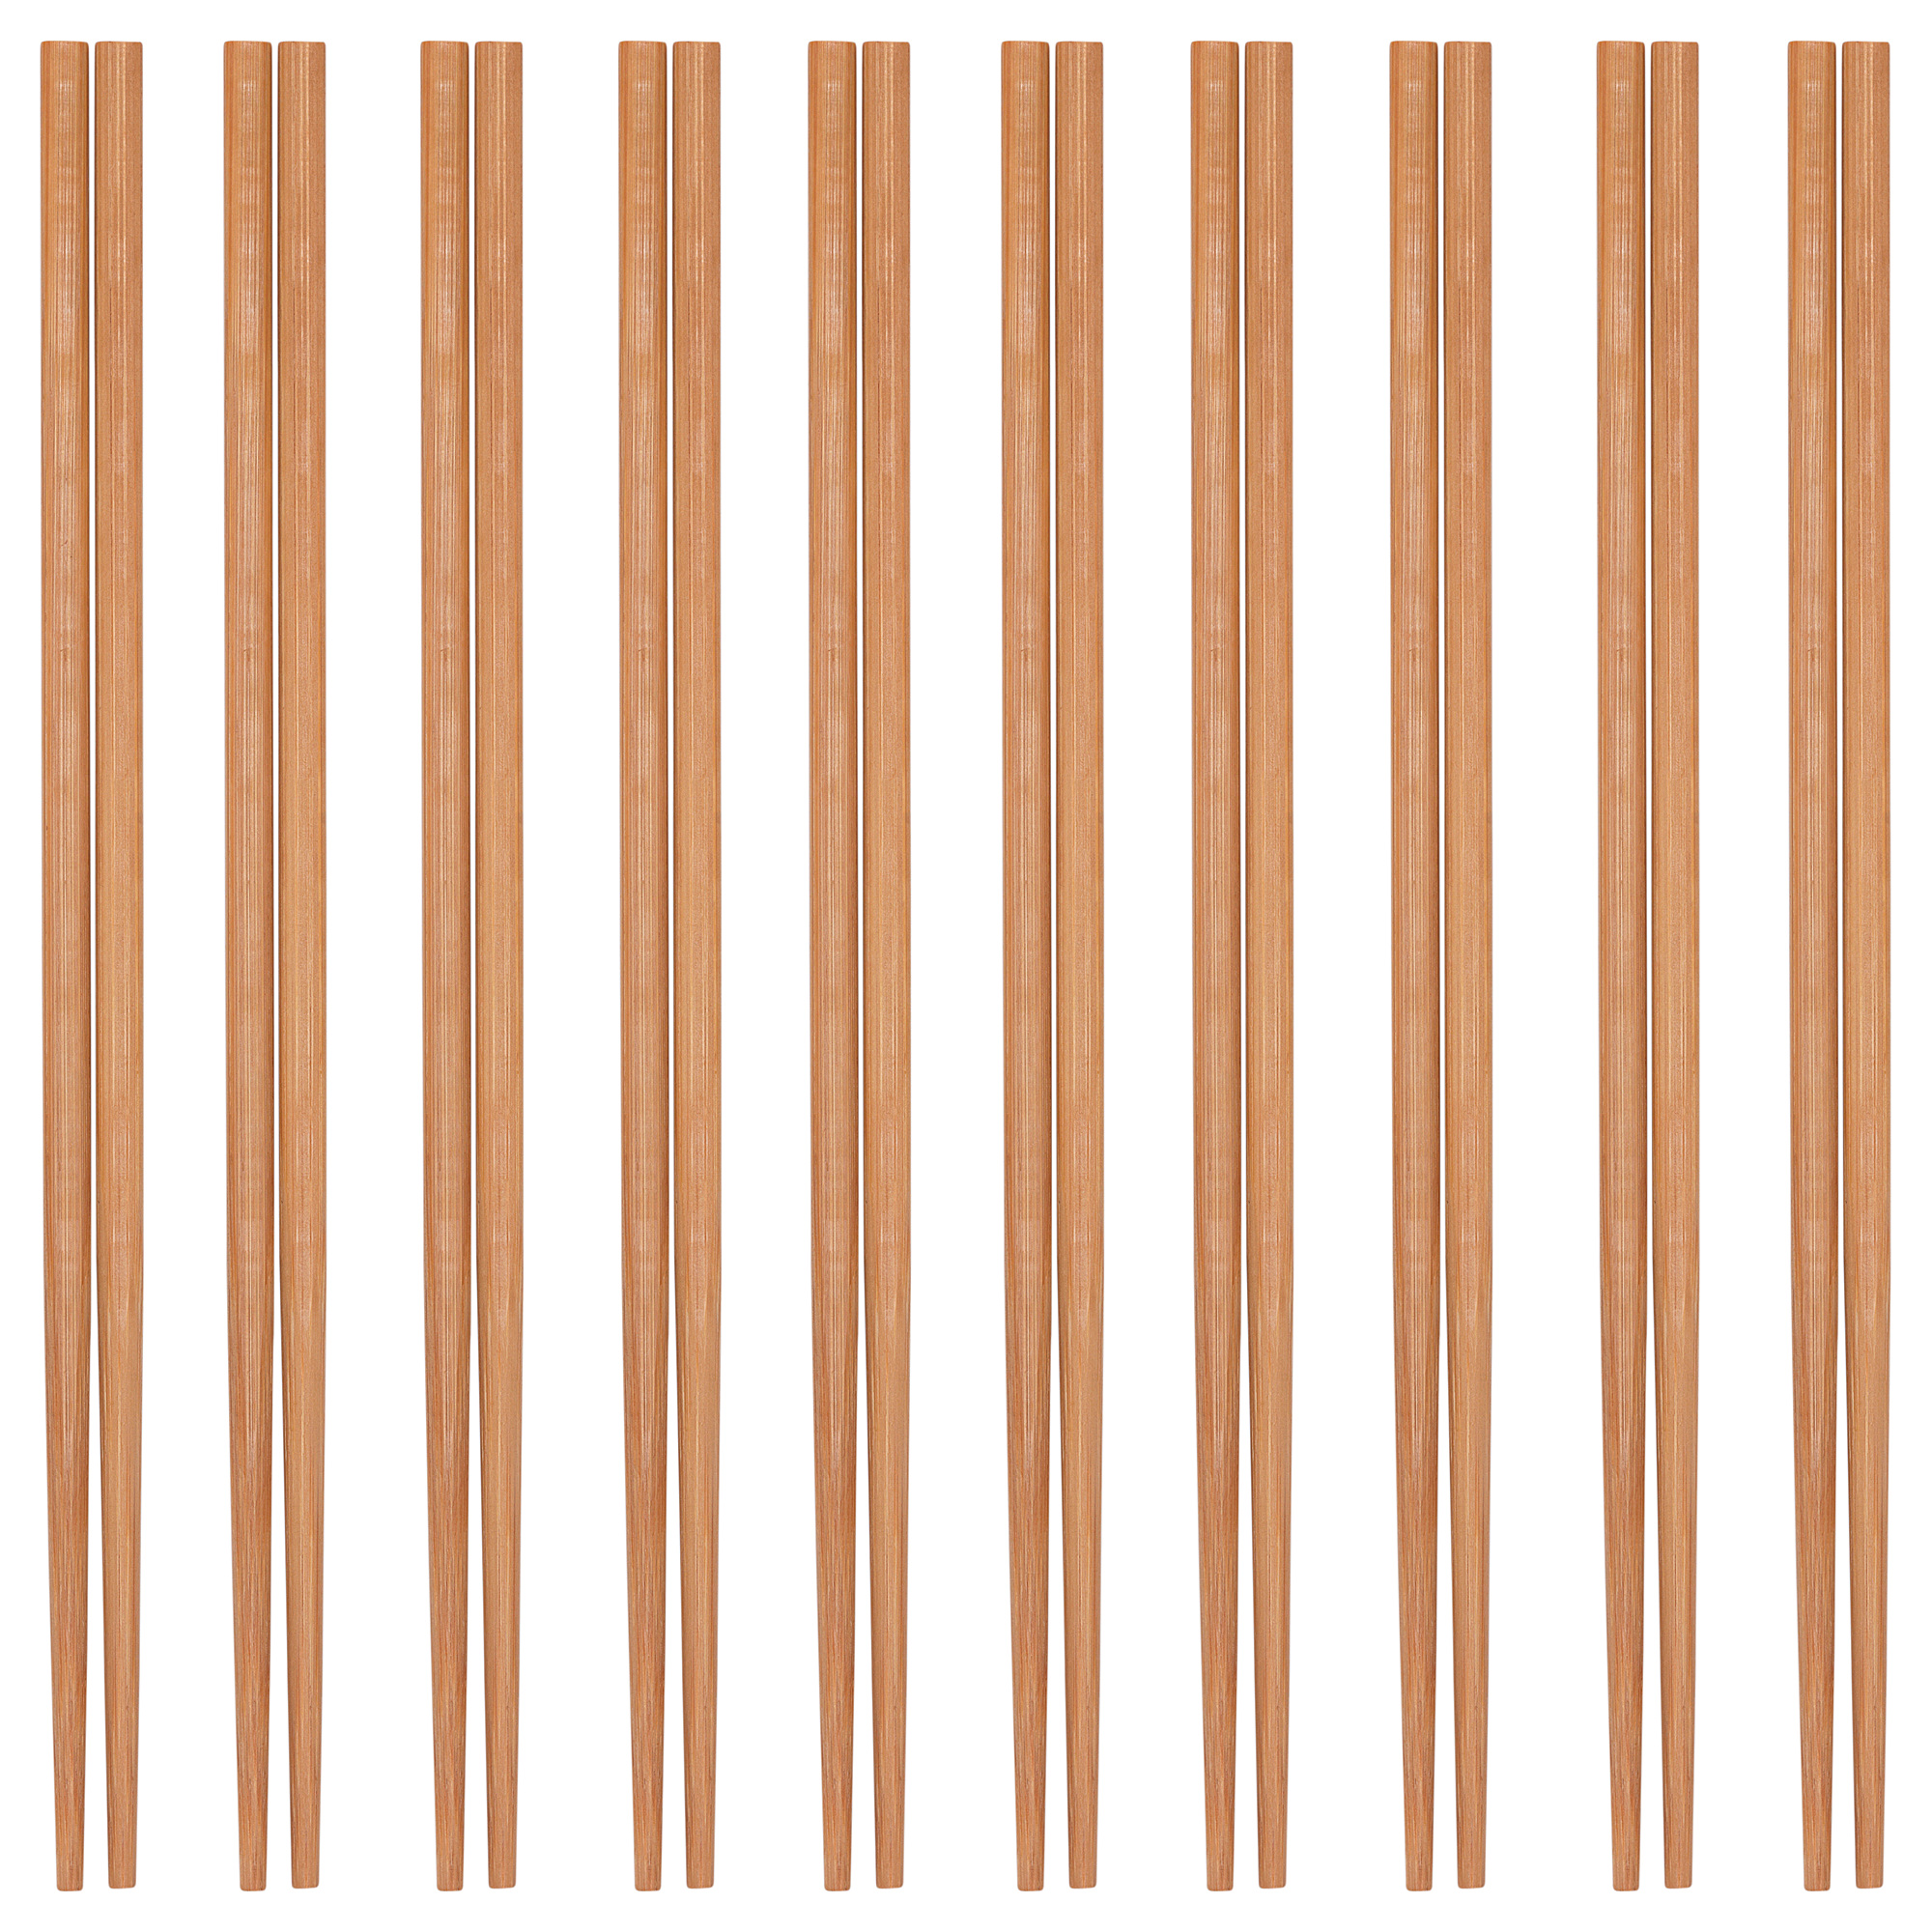 MEDHJÄLPARE chopsticks 10 pairs